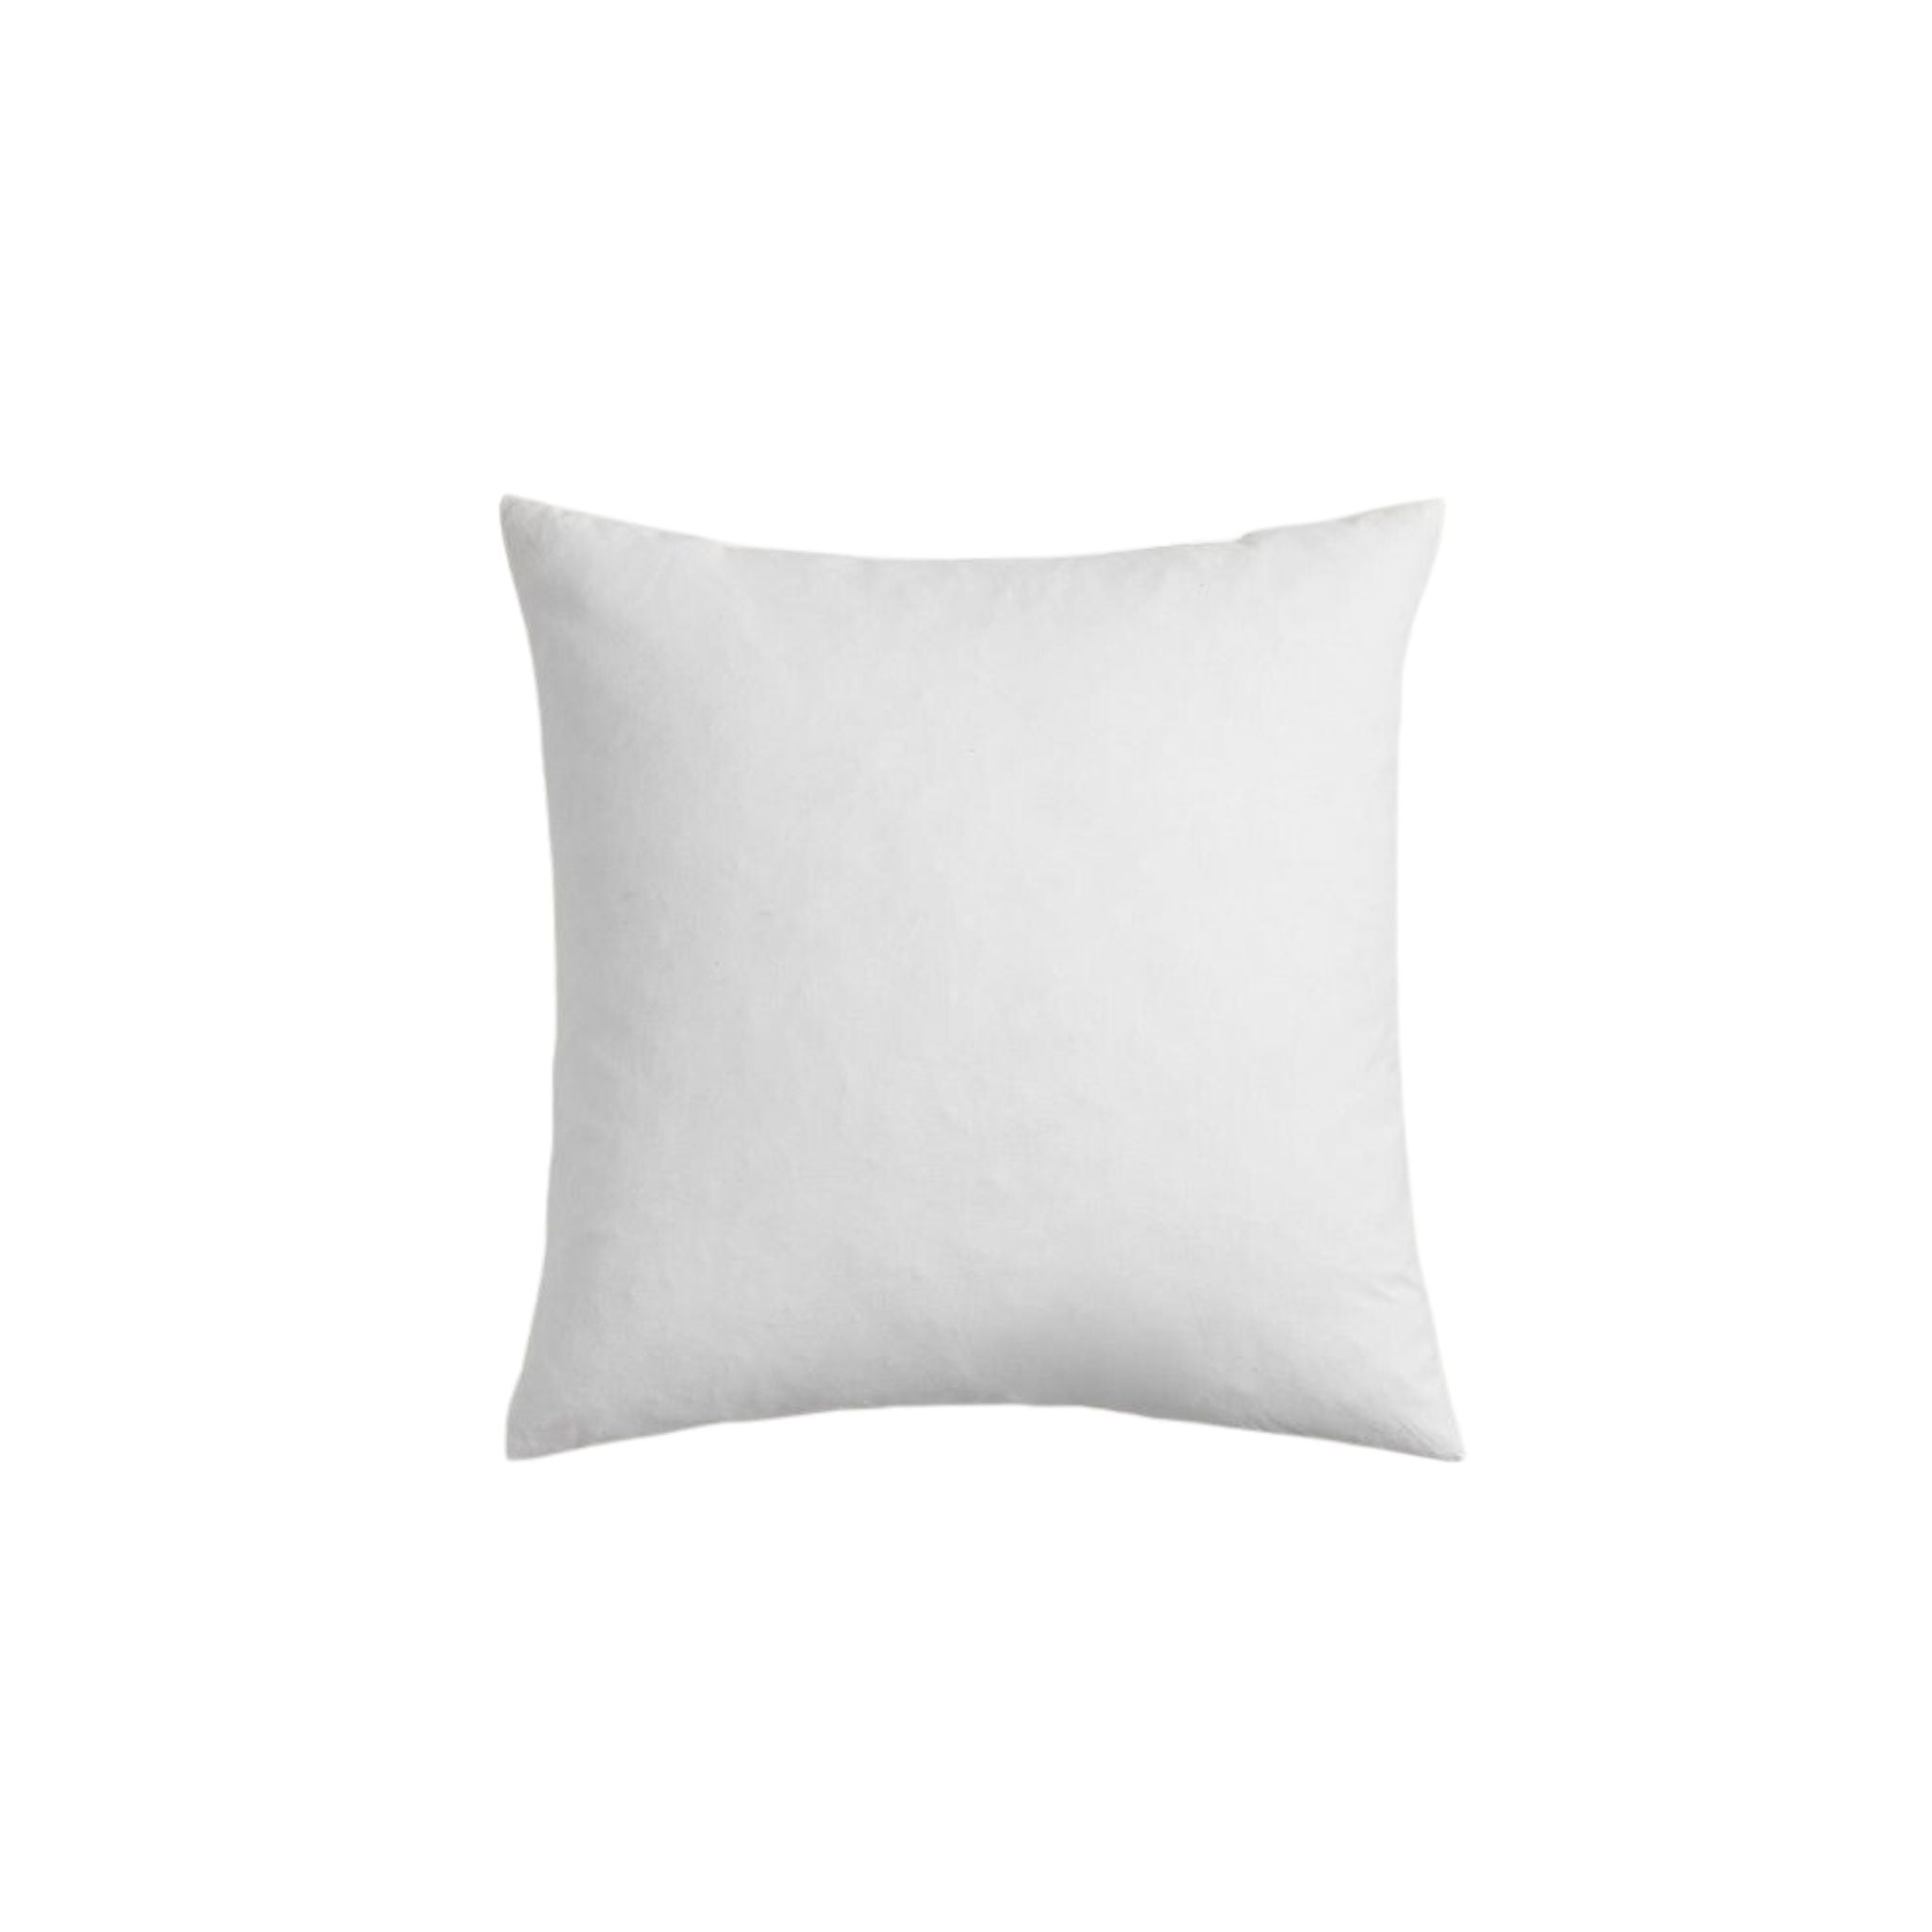 Pillow Insert - 21x21